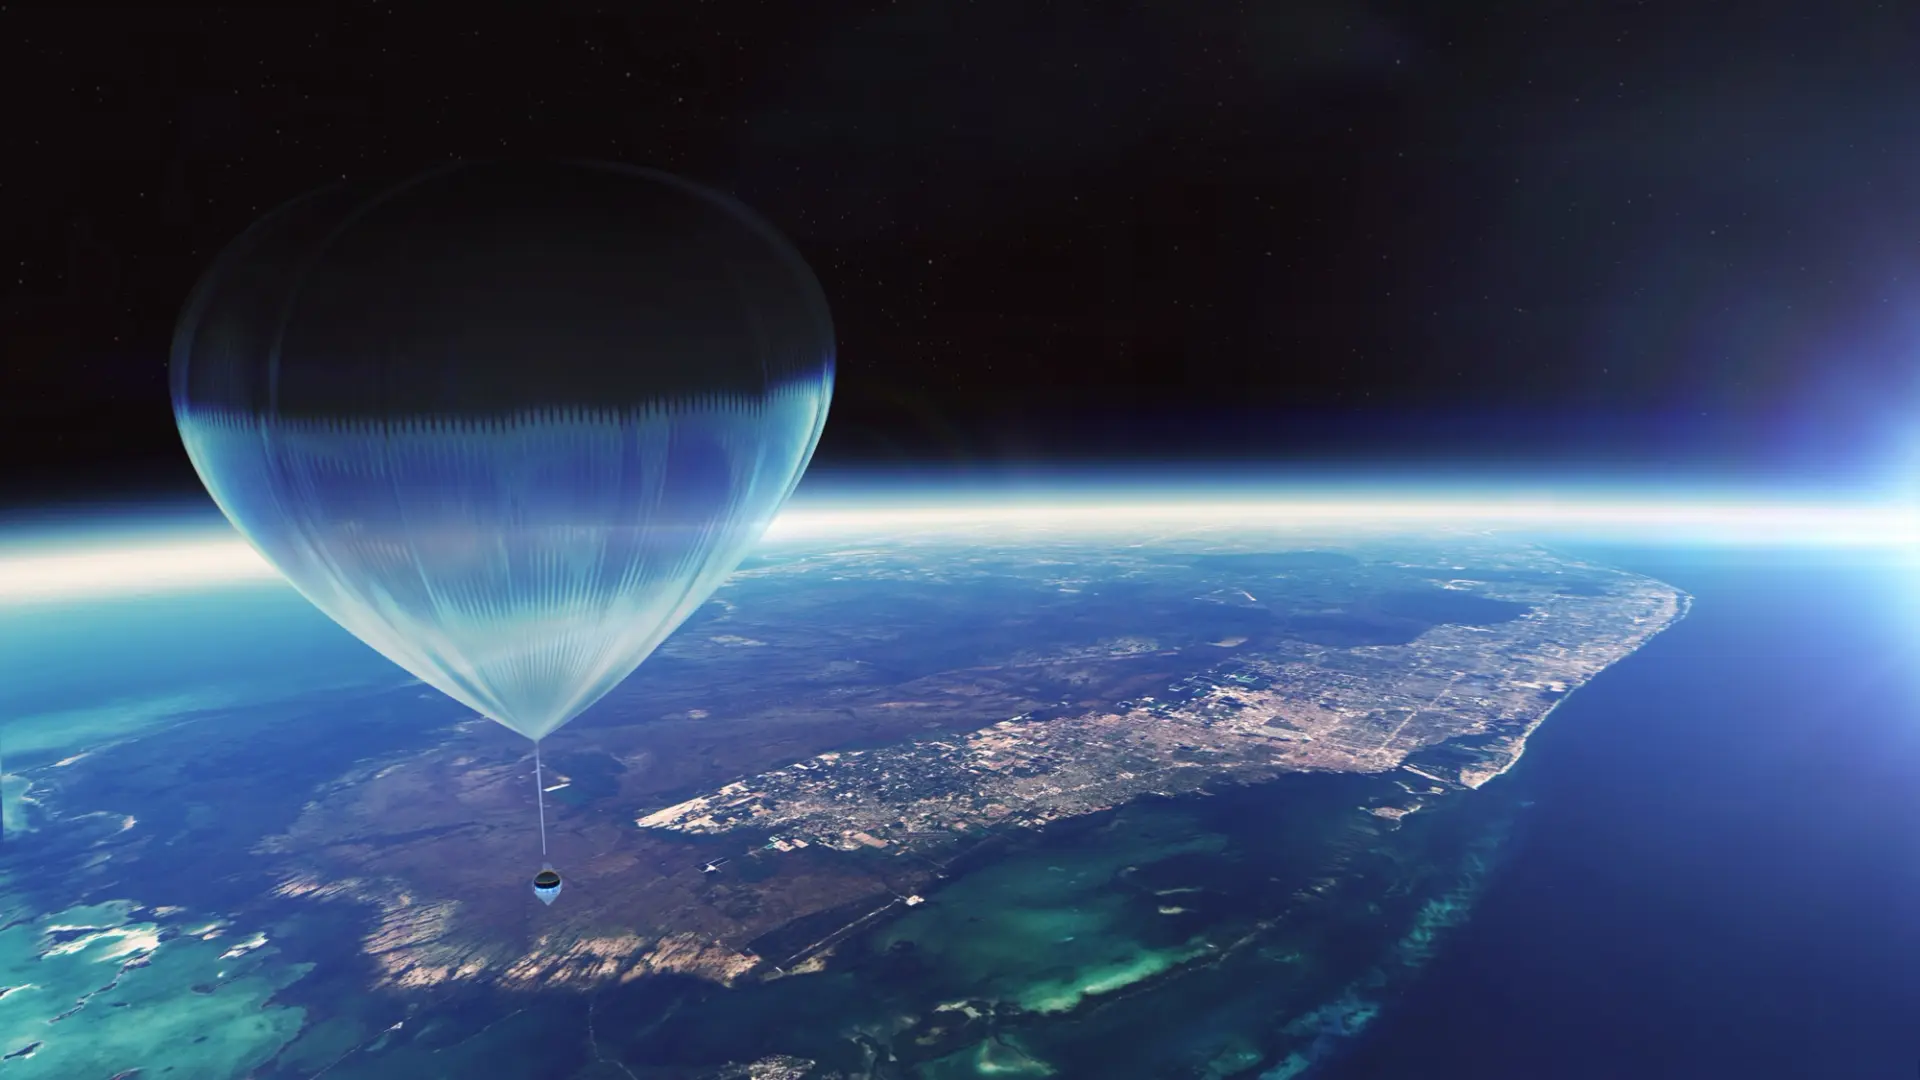 エイチ・アイ・エス、気球型宇宙船「スペースシップ・ネプチューン」の受付開始─約1600万円、高度30kmの宇宙旅行